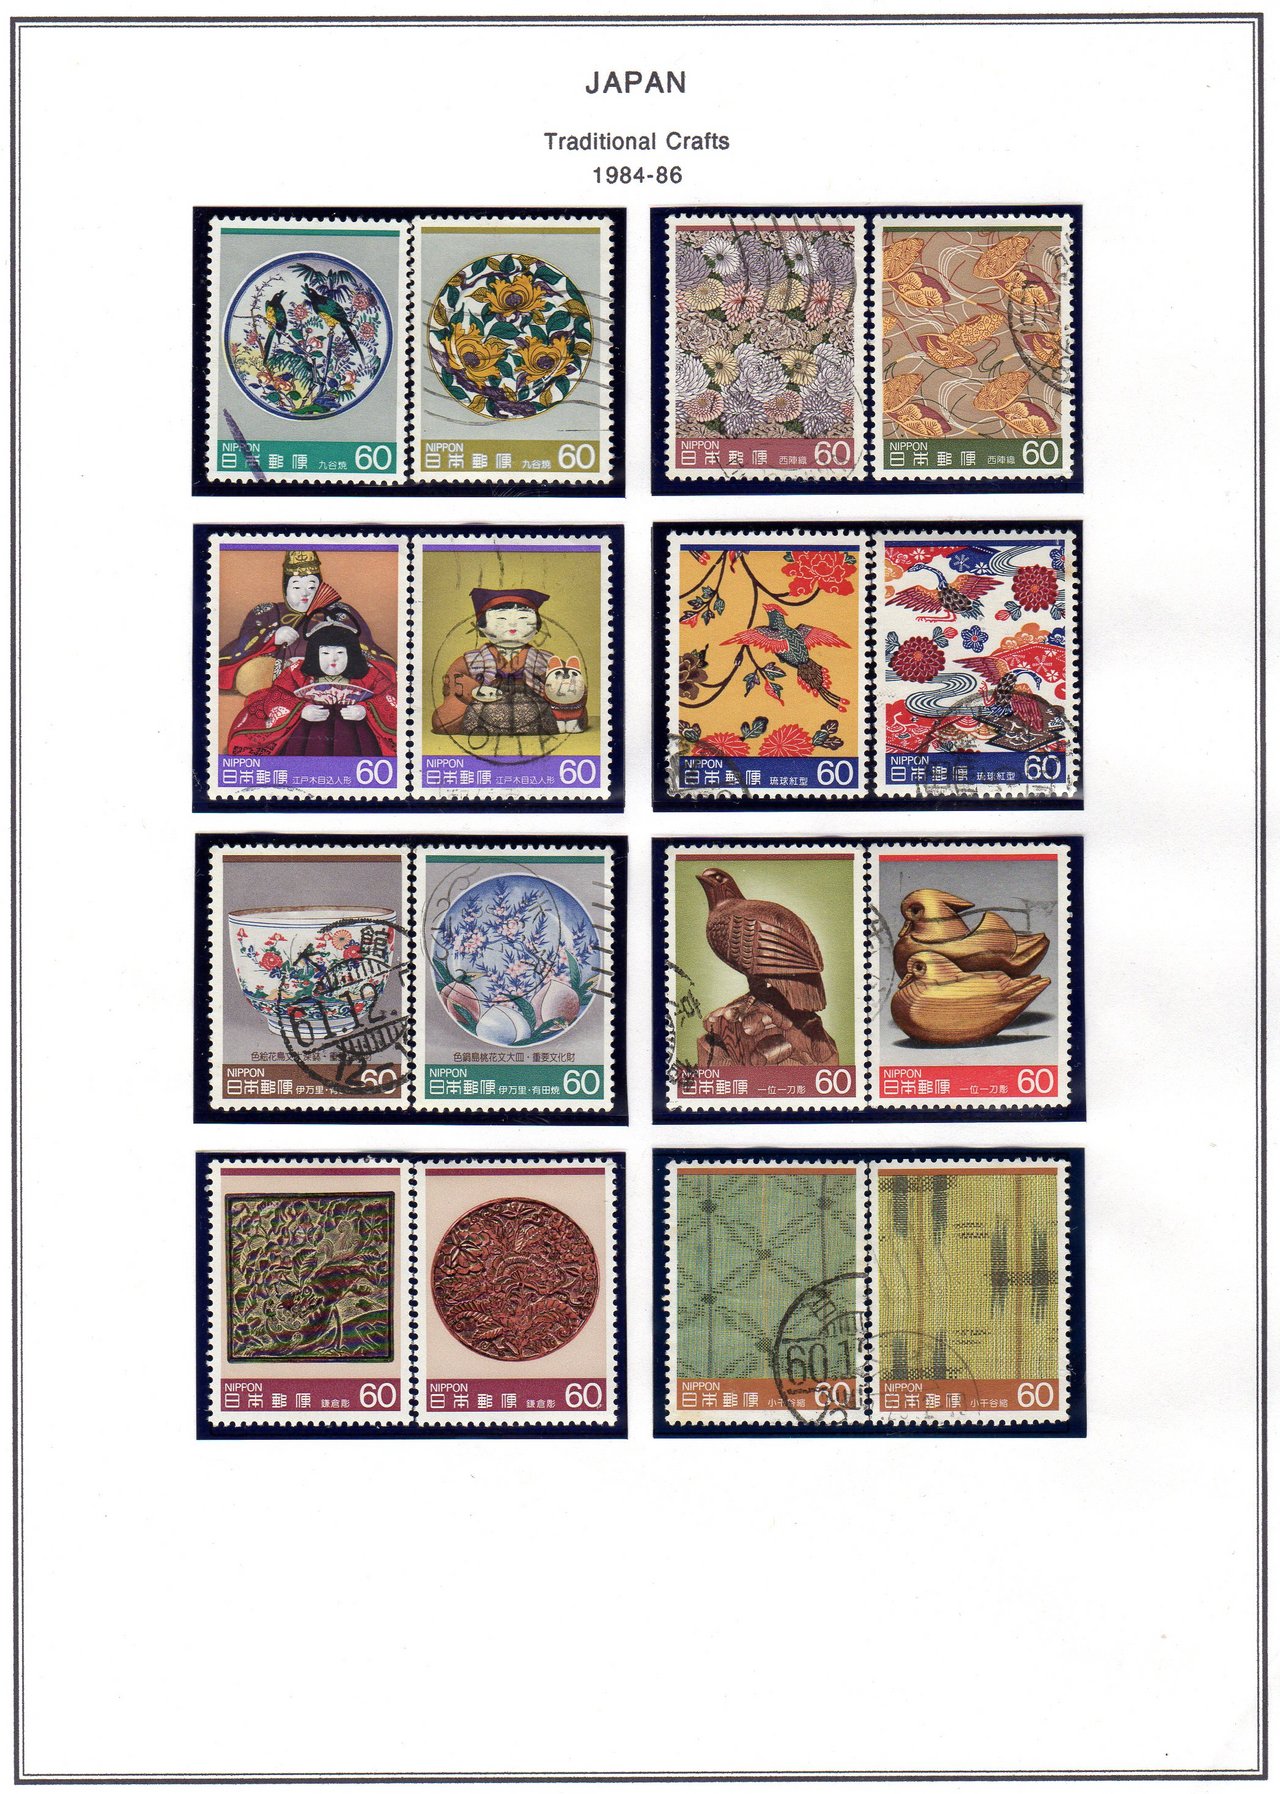 JAPAN-1990-62-14.jpg